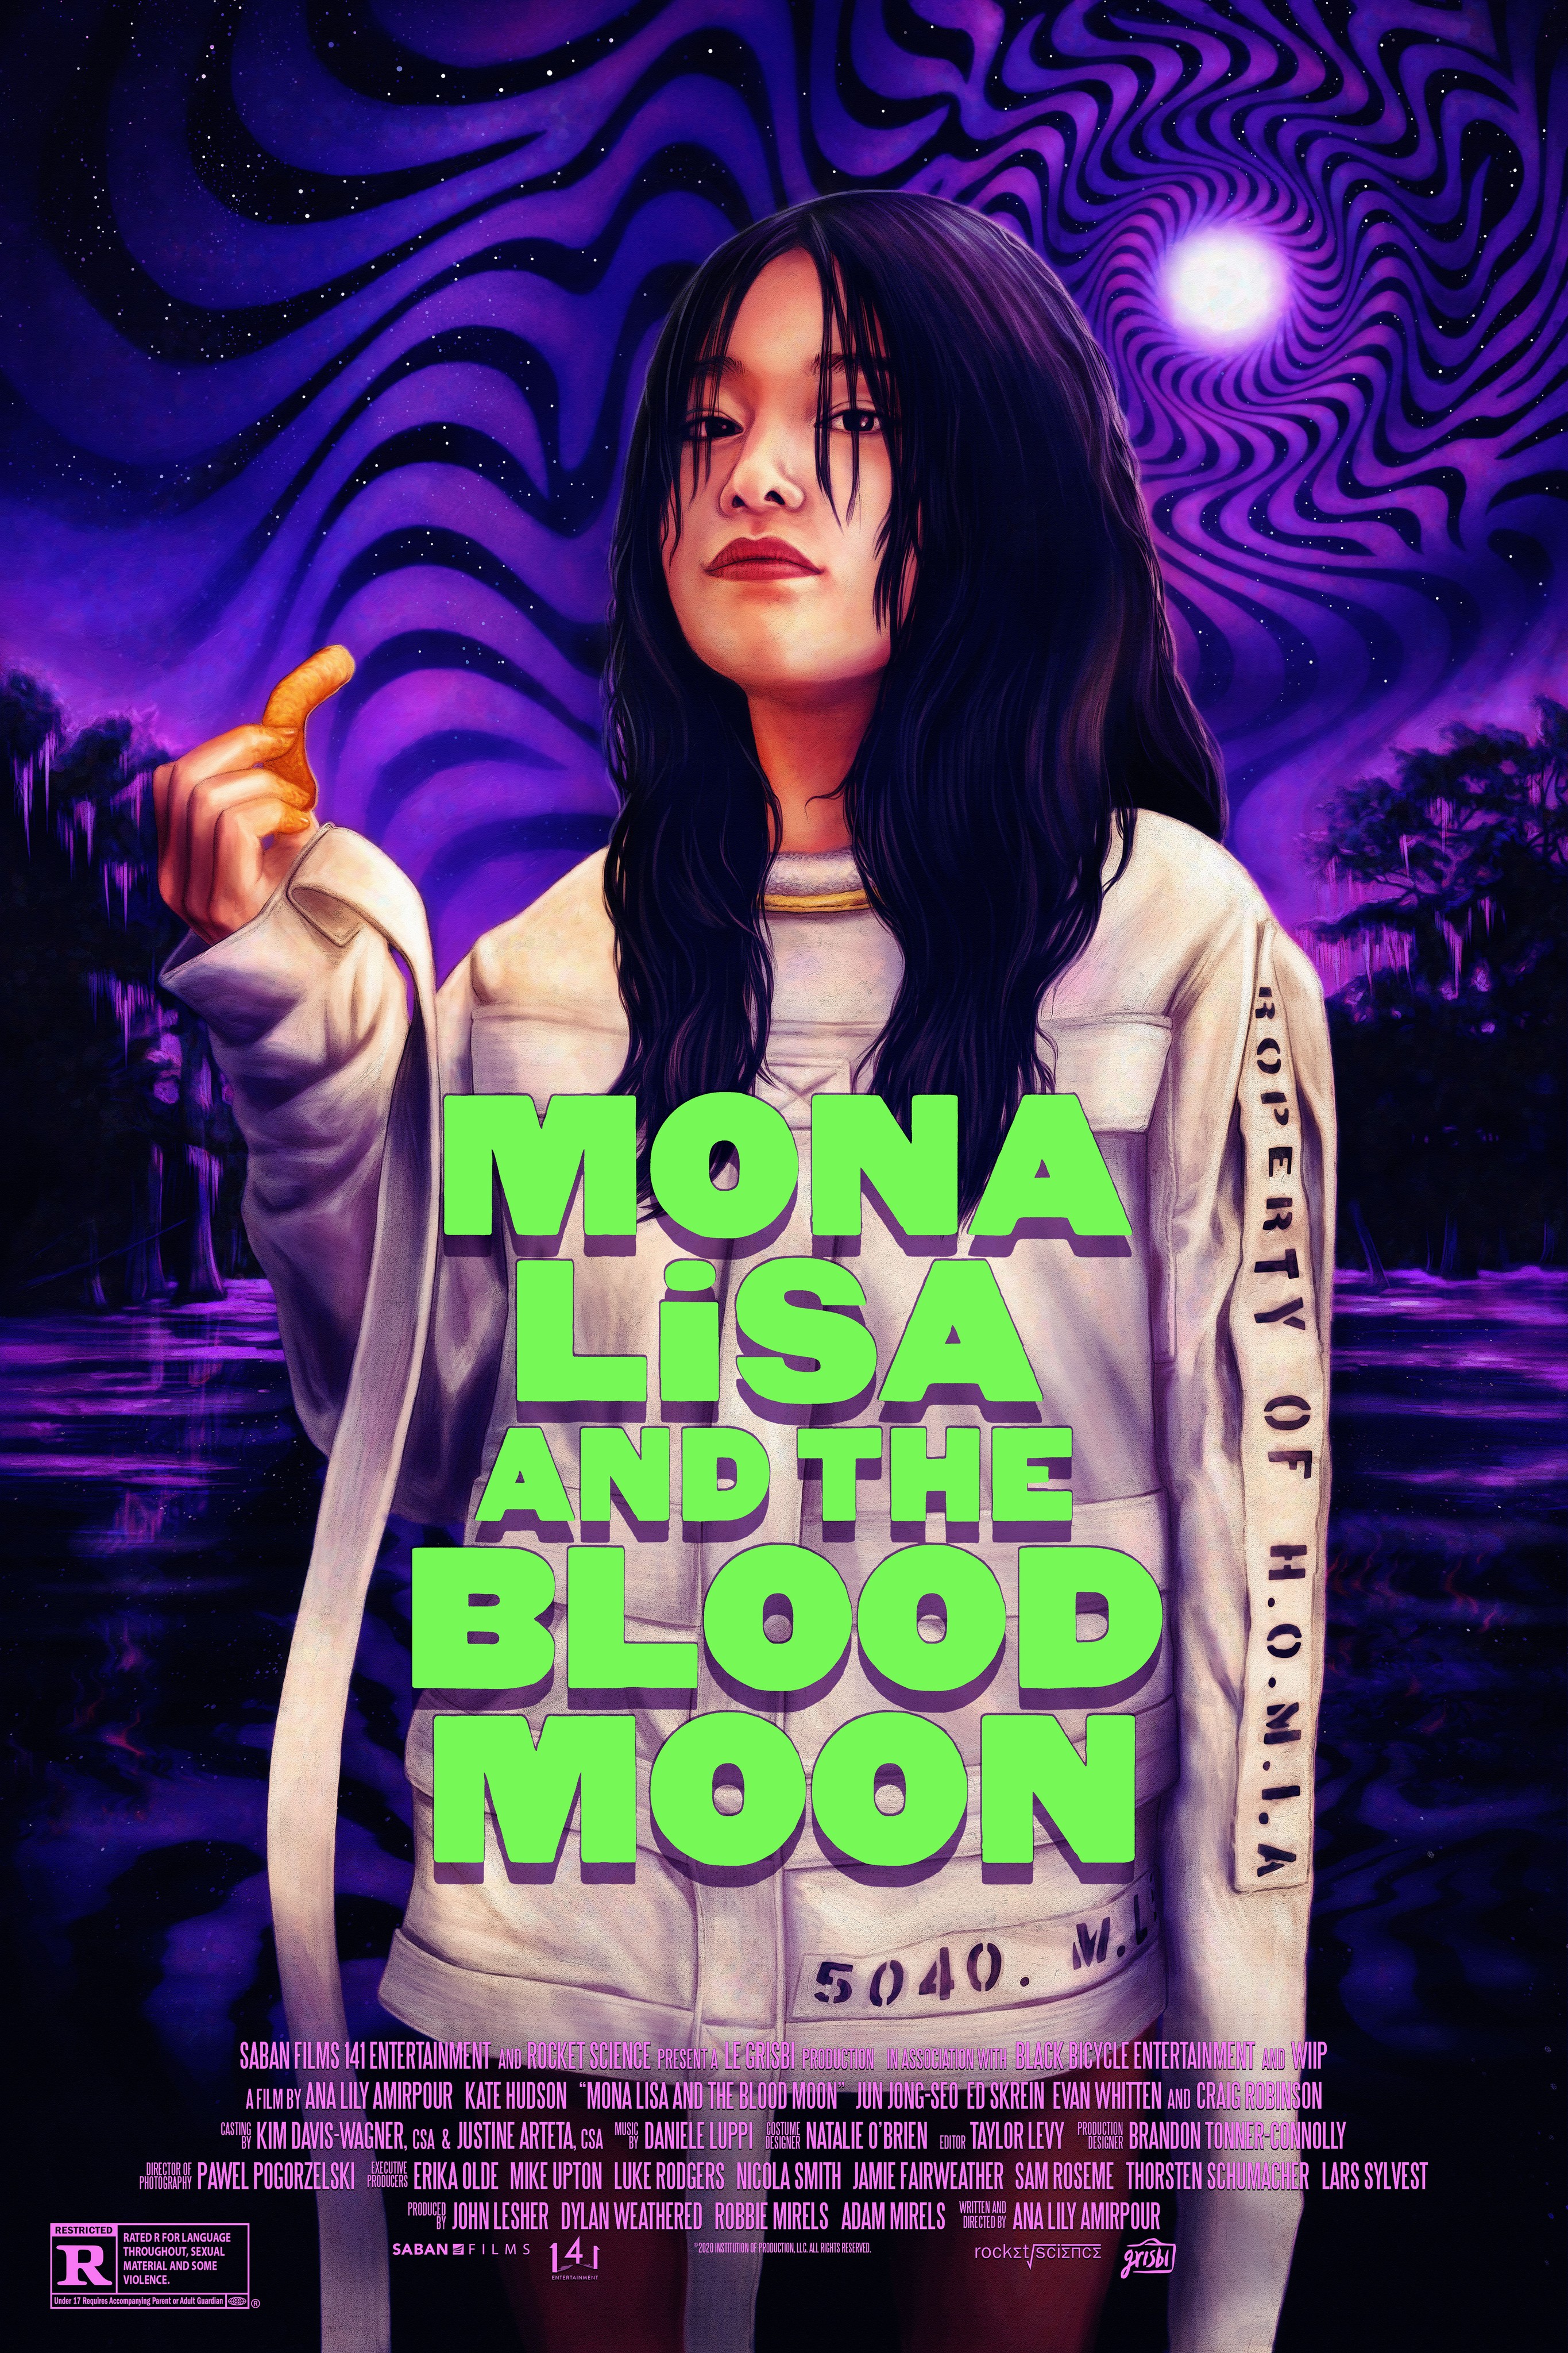 Monalisa: Movies, TV, and Bio